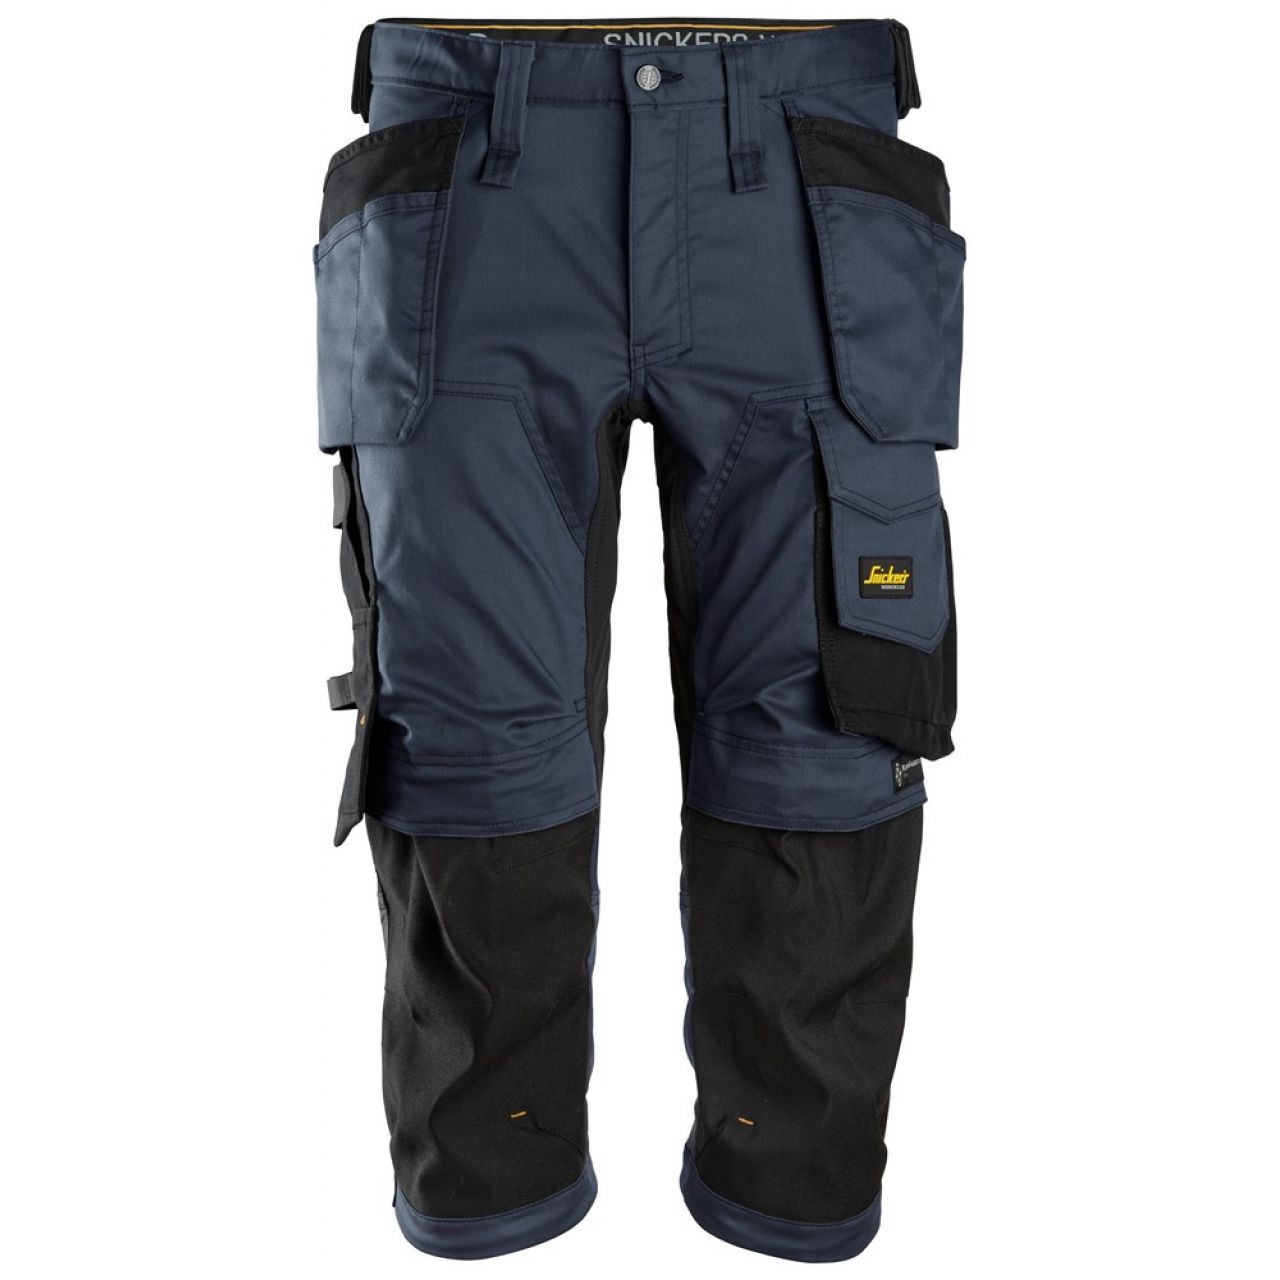 6142 Pantalones pirata de trabajo elasticos con bolsillos flotantes AllroundWork azul marino-negro talla 48